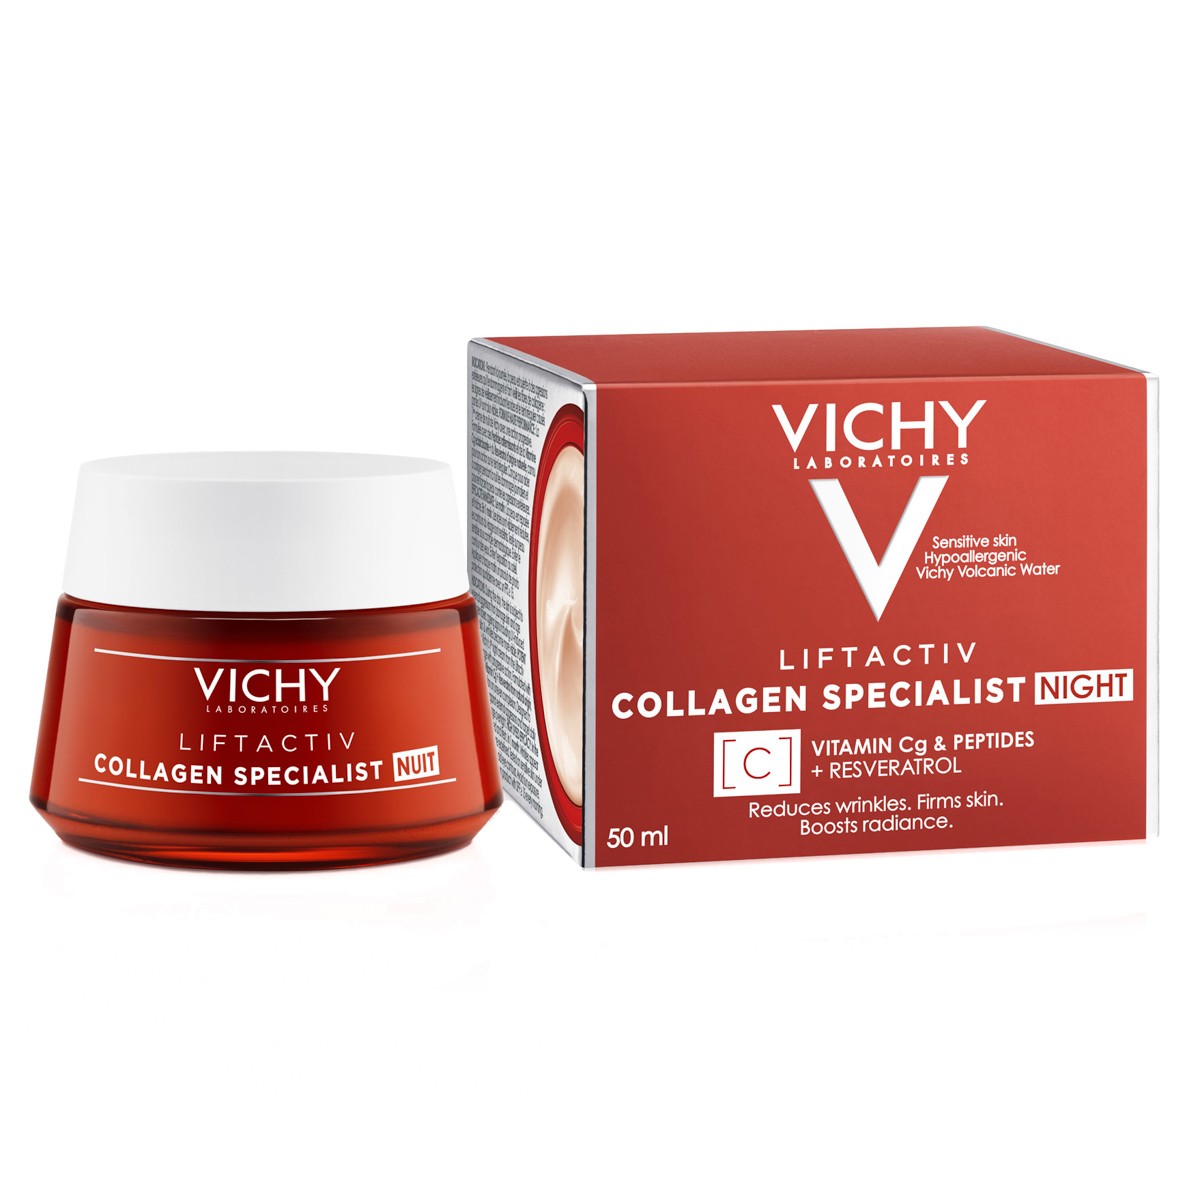 Vichy Liftactiv Collagen Specialist crema de noche 50ml